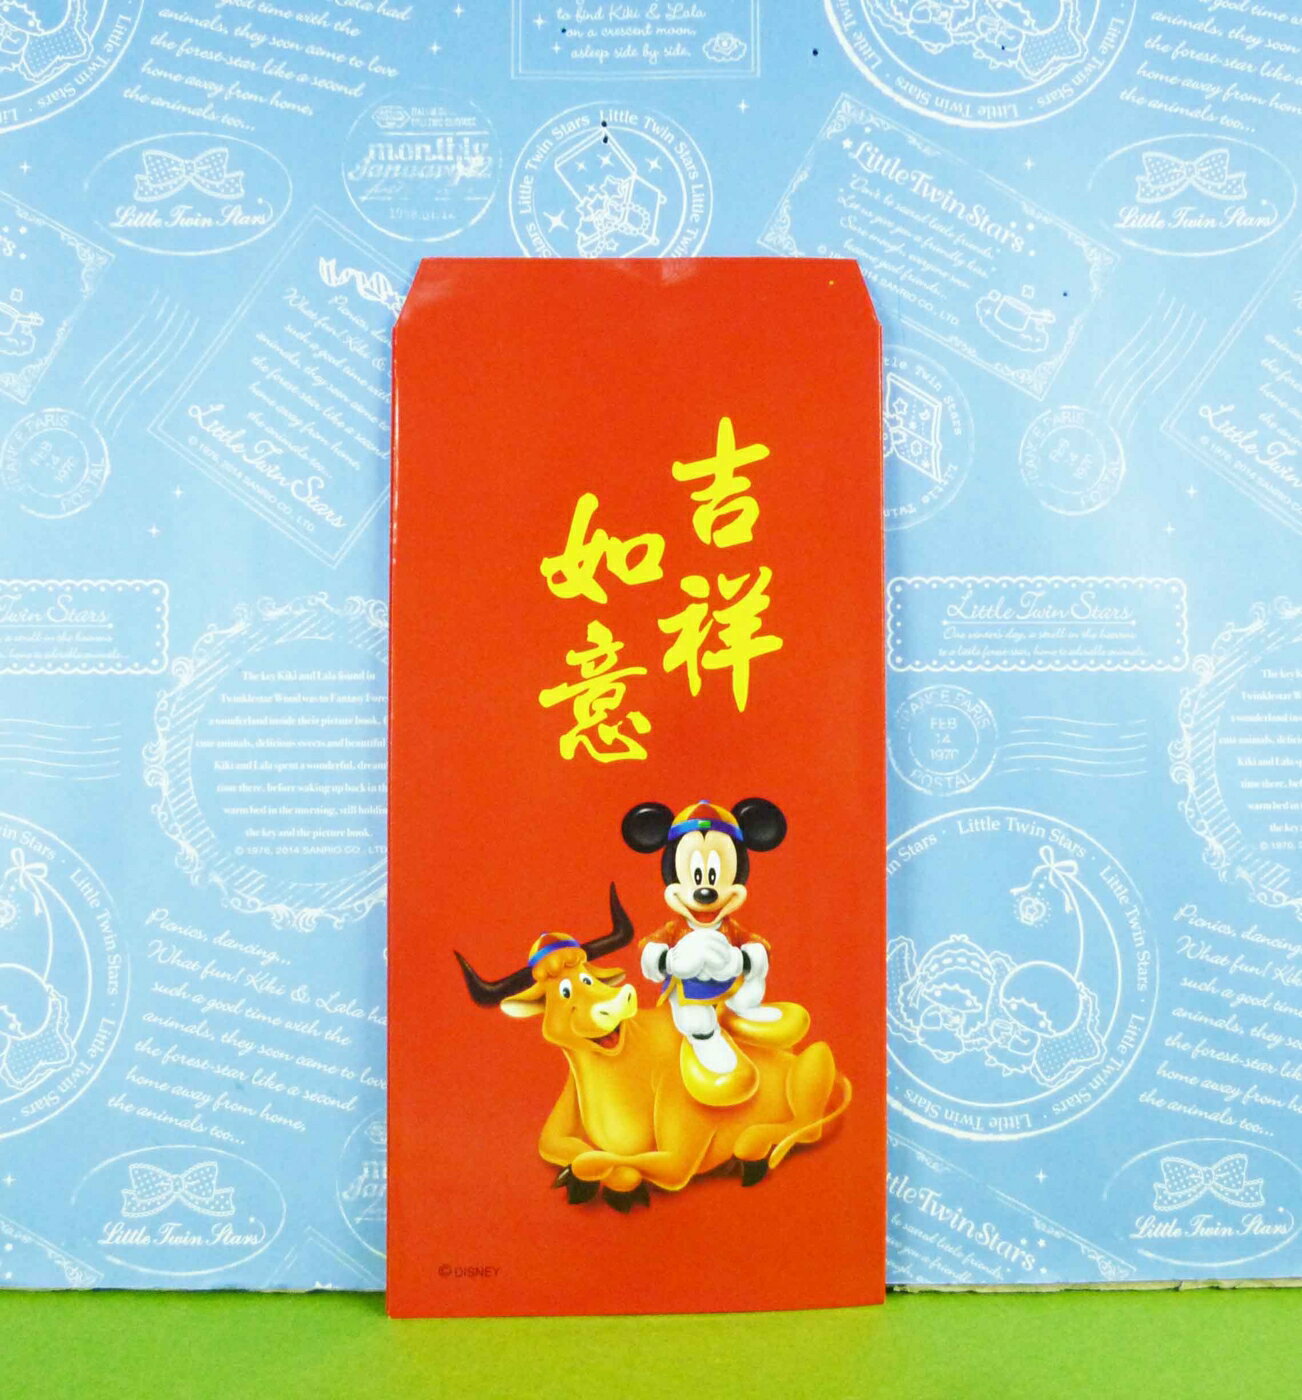 【震撼精品百貨】米奇/米妮 Micky Mouse 紅包袋組 紅【共1款】 震撼日式精品百貨